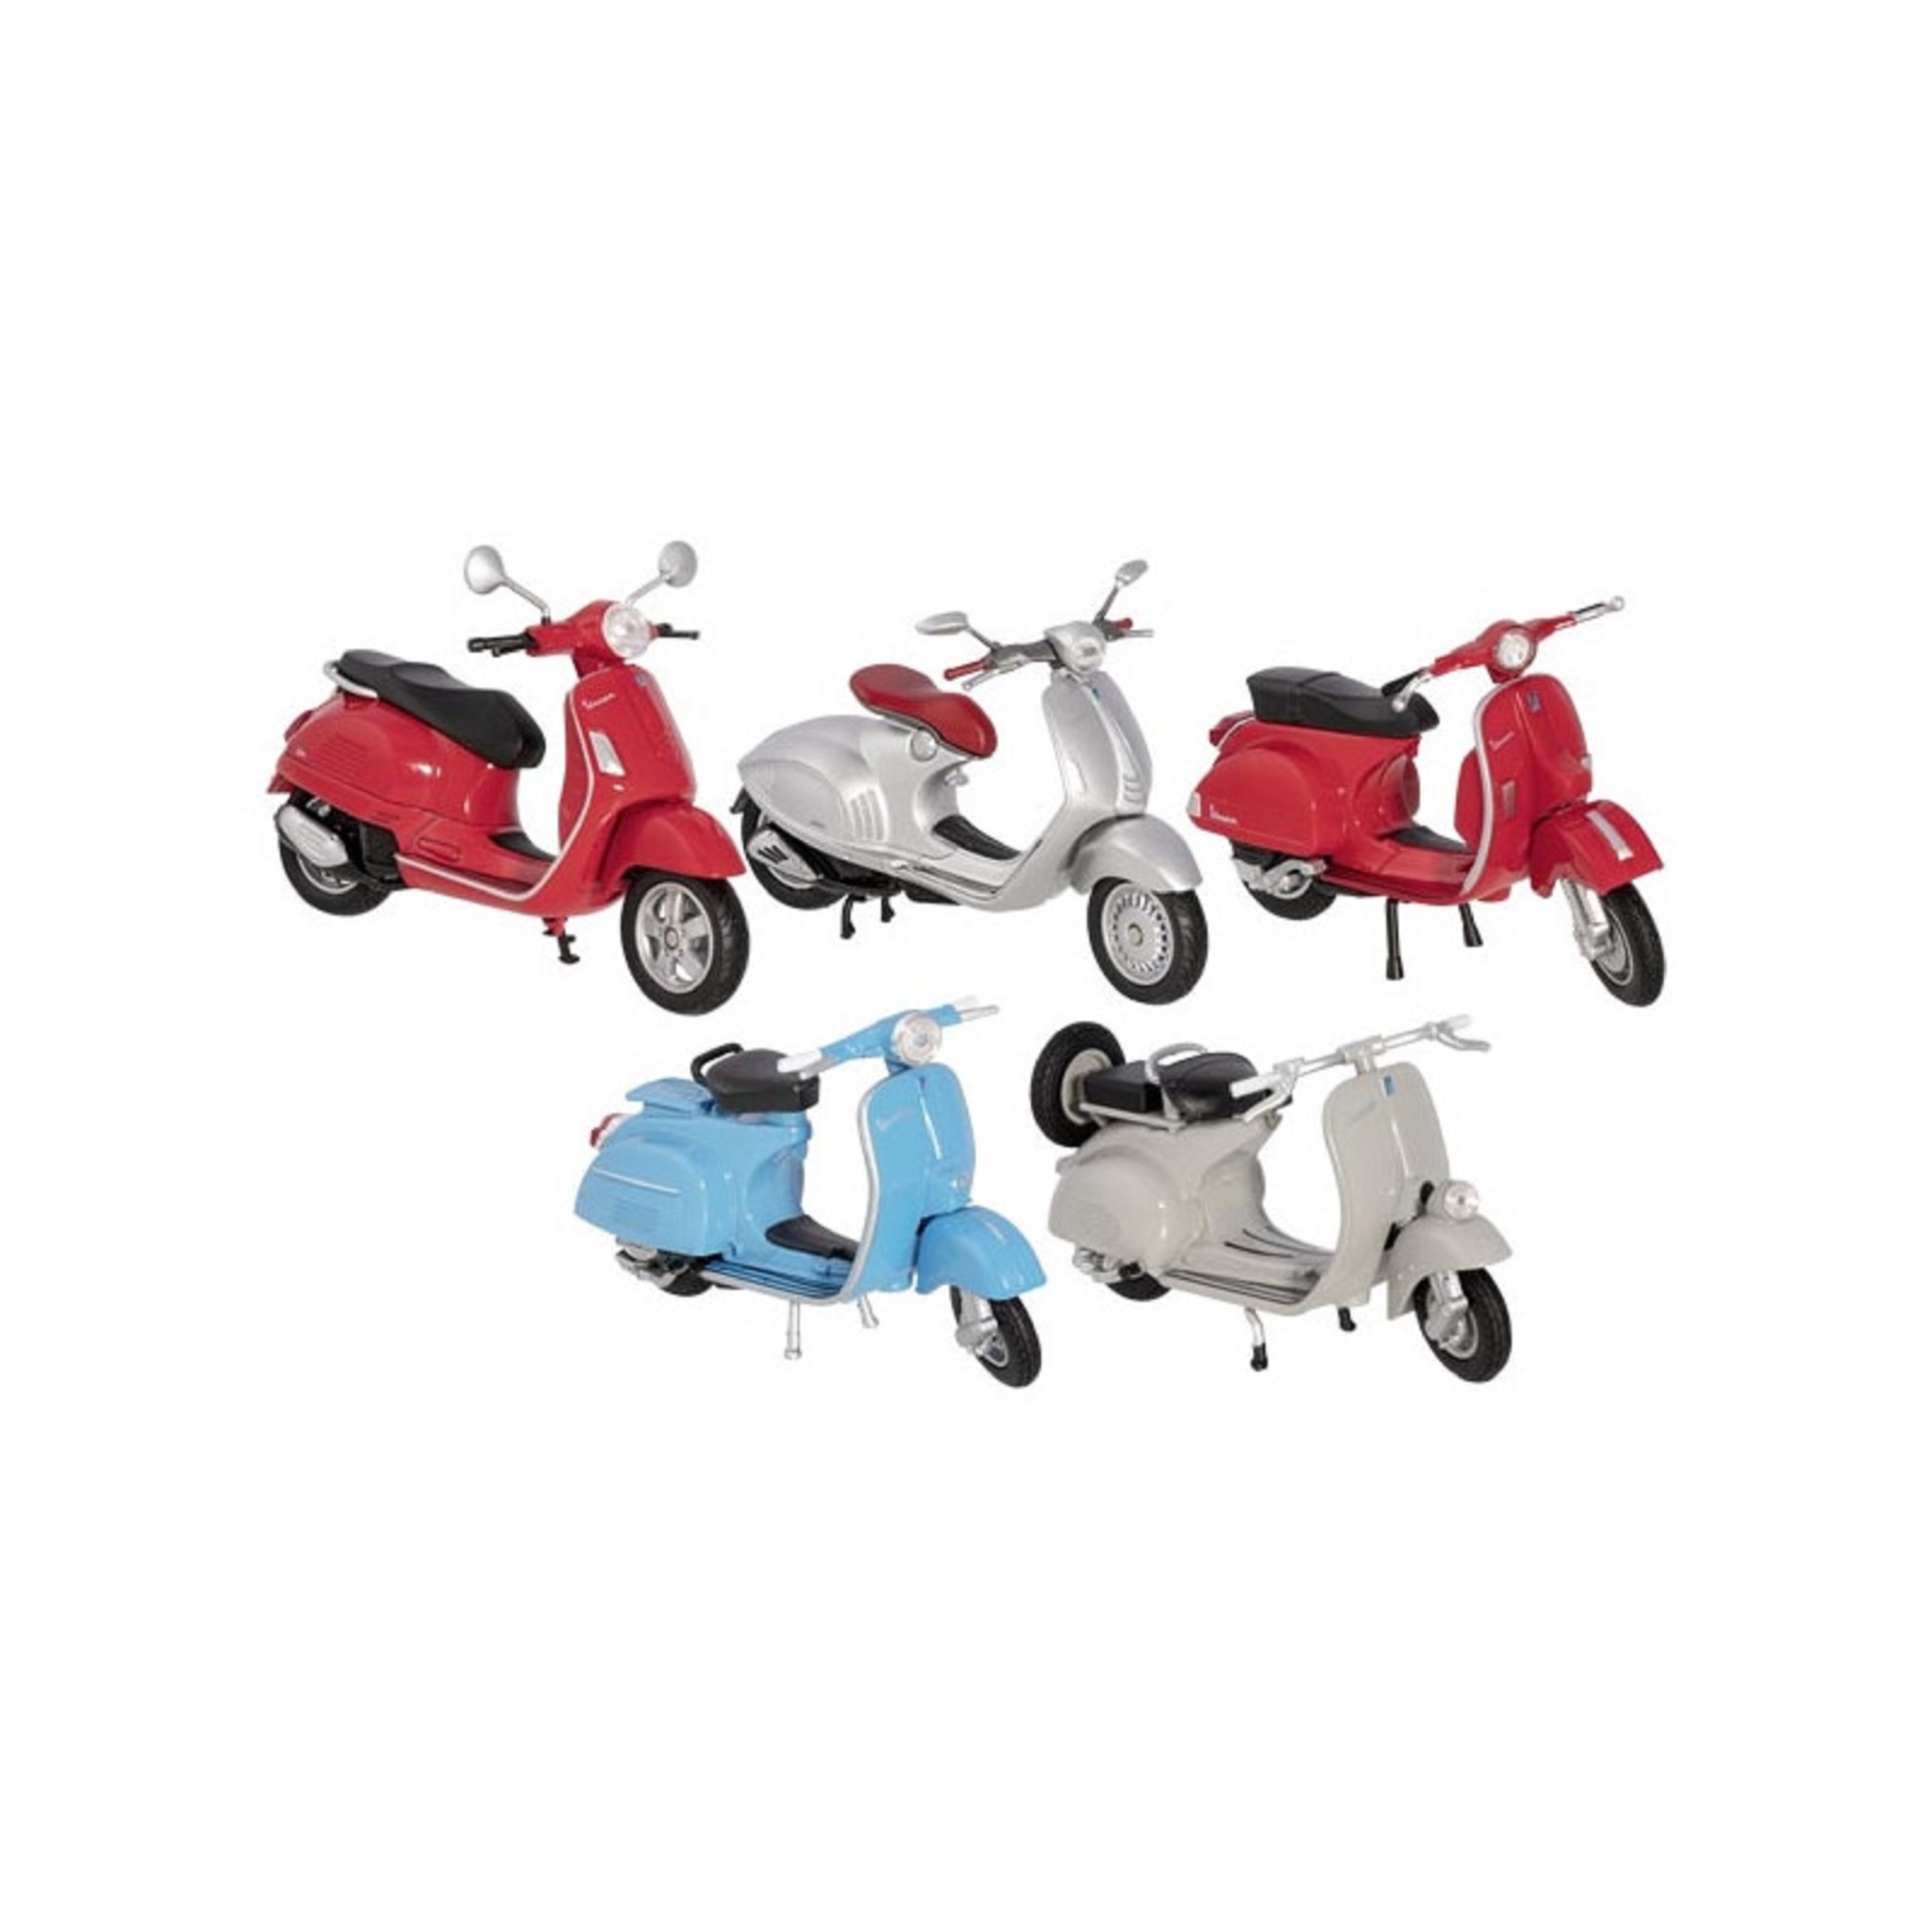 Motocicleta - Vespa - mai multe culori | Goki